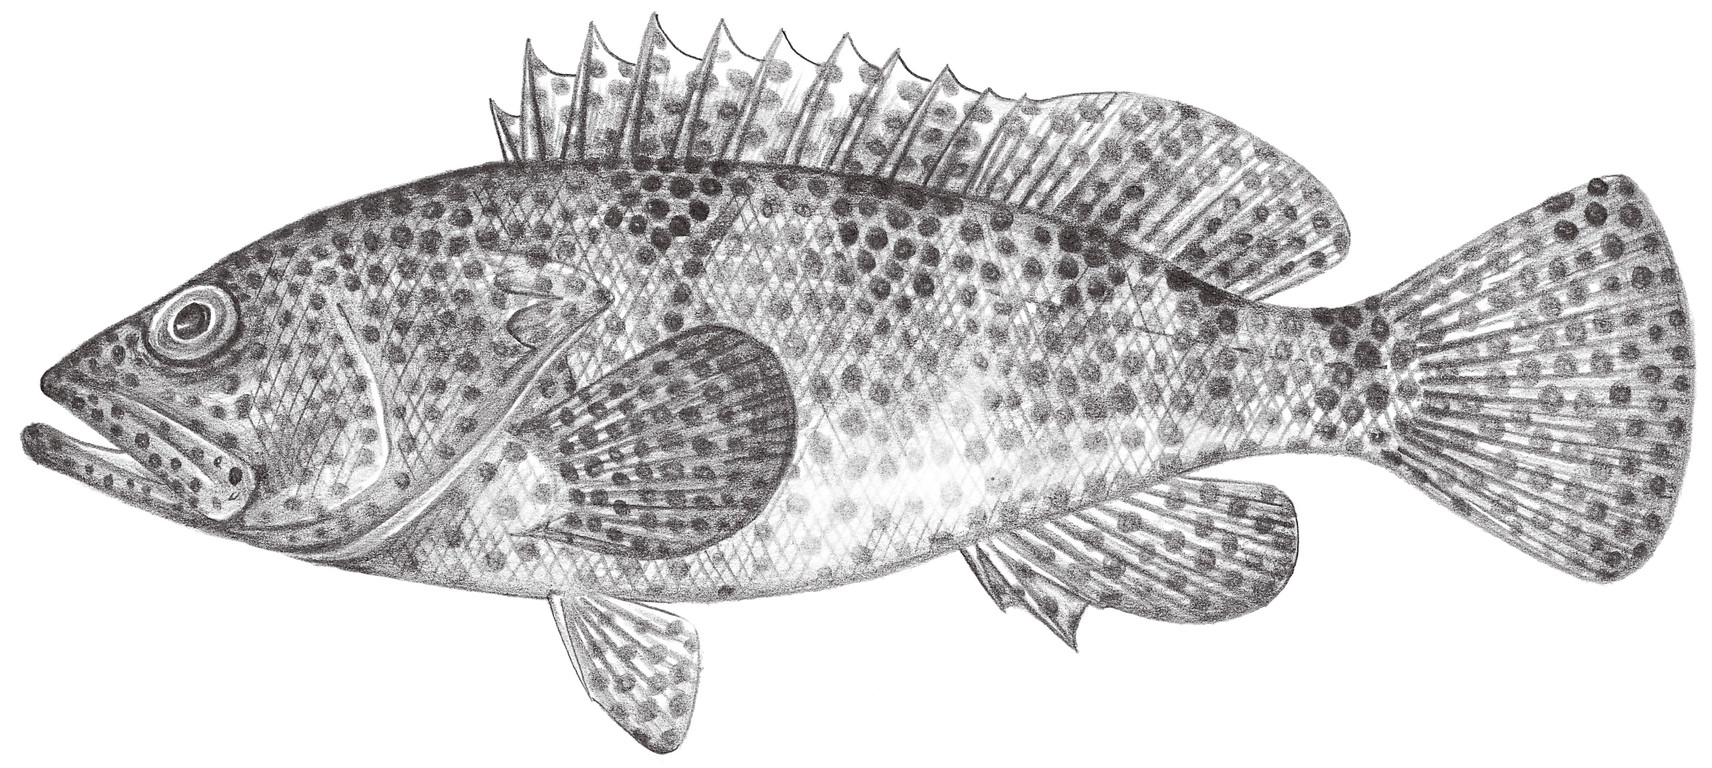 1046.	吻斑石斑魚 Epinephelus spilotoceps Schultz, 1953